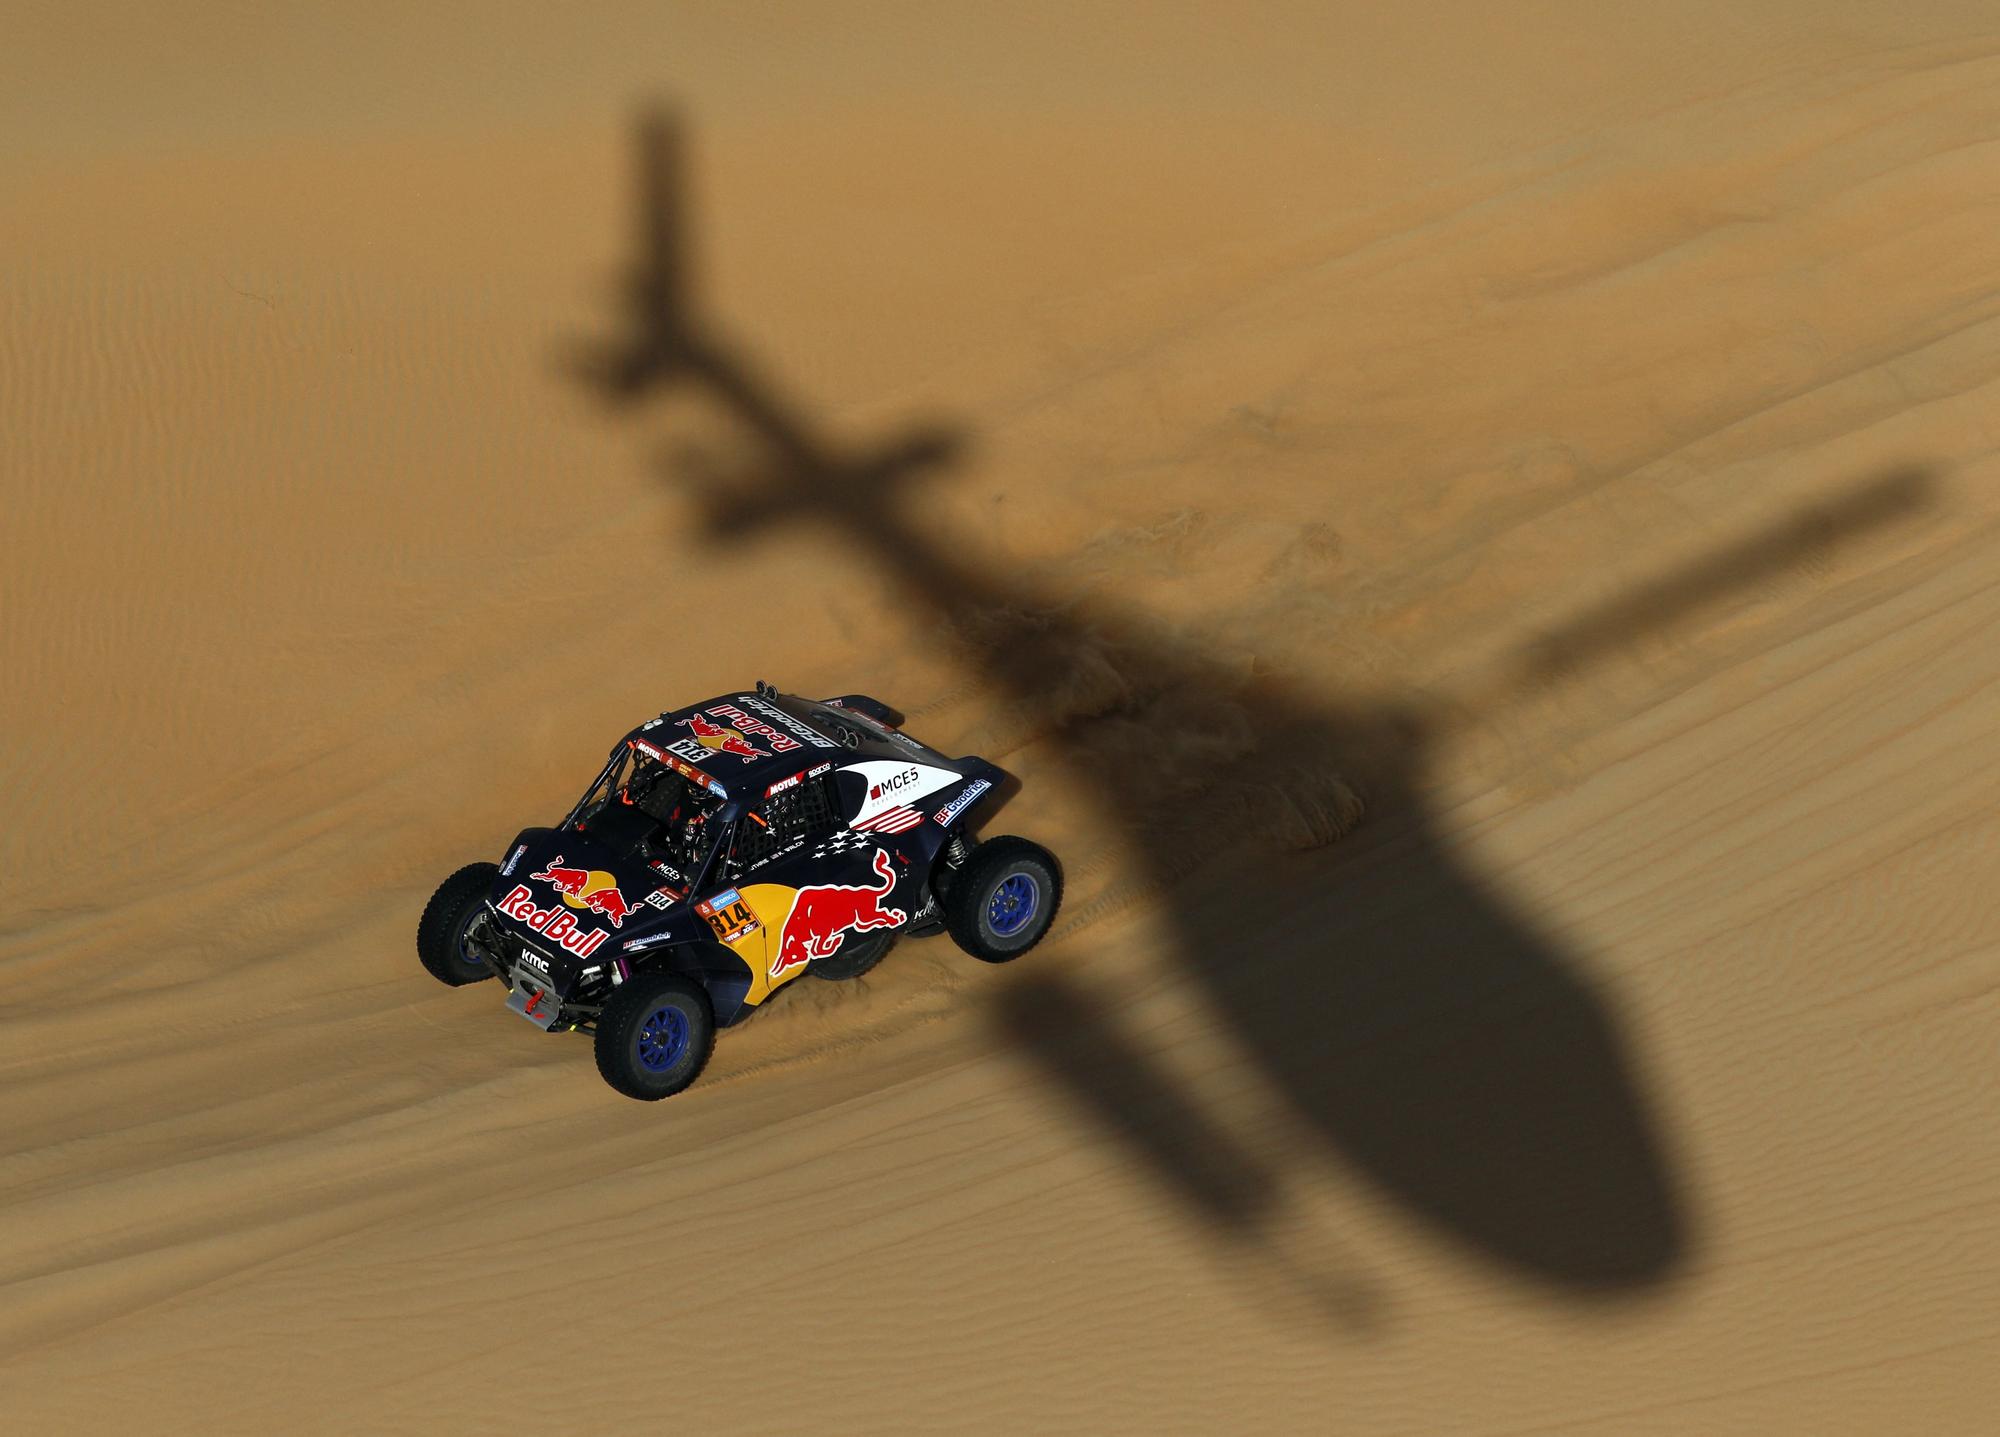 Dakar Rally (163661250).jpg